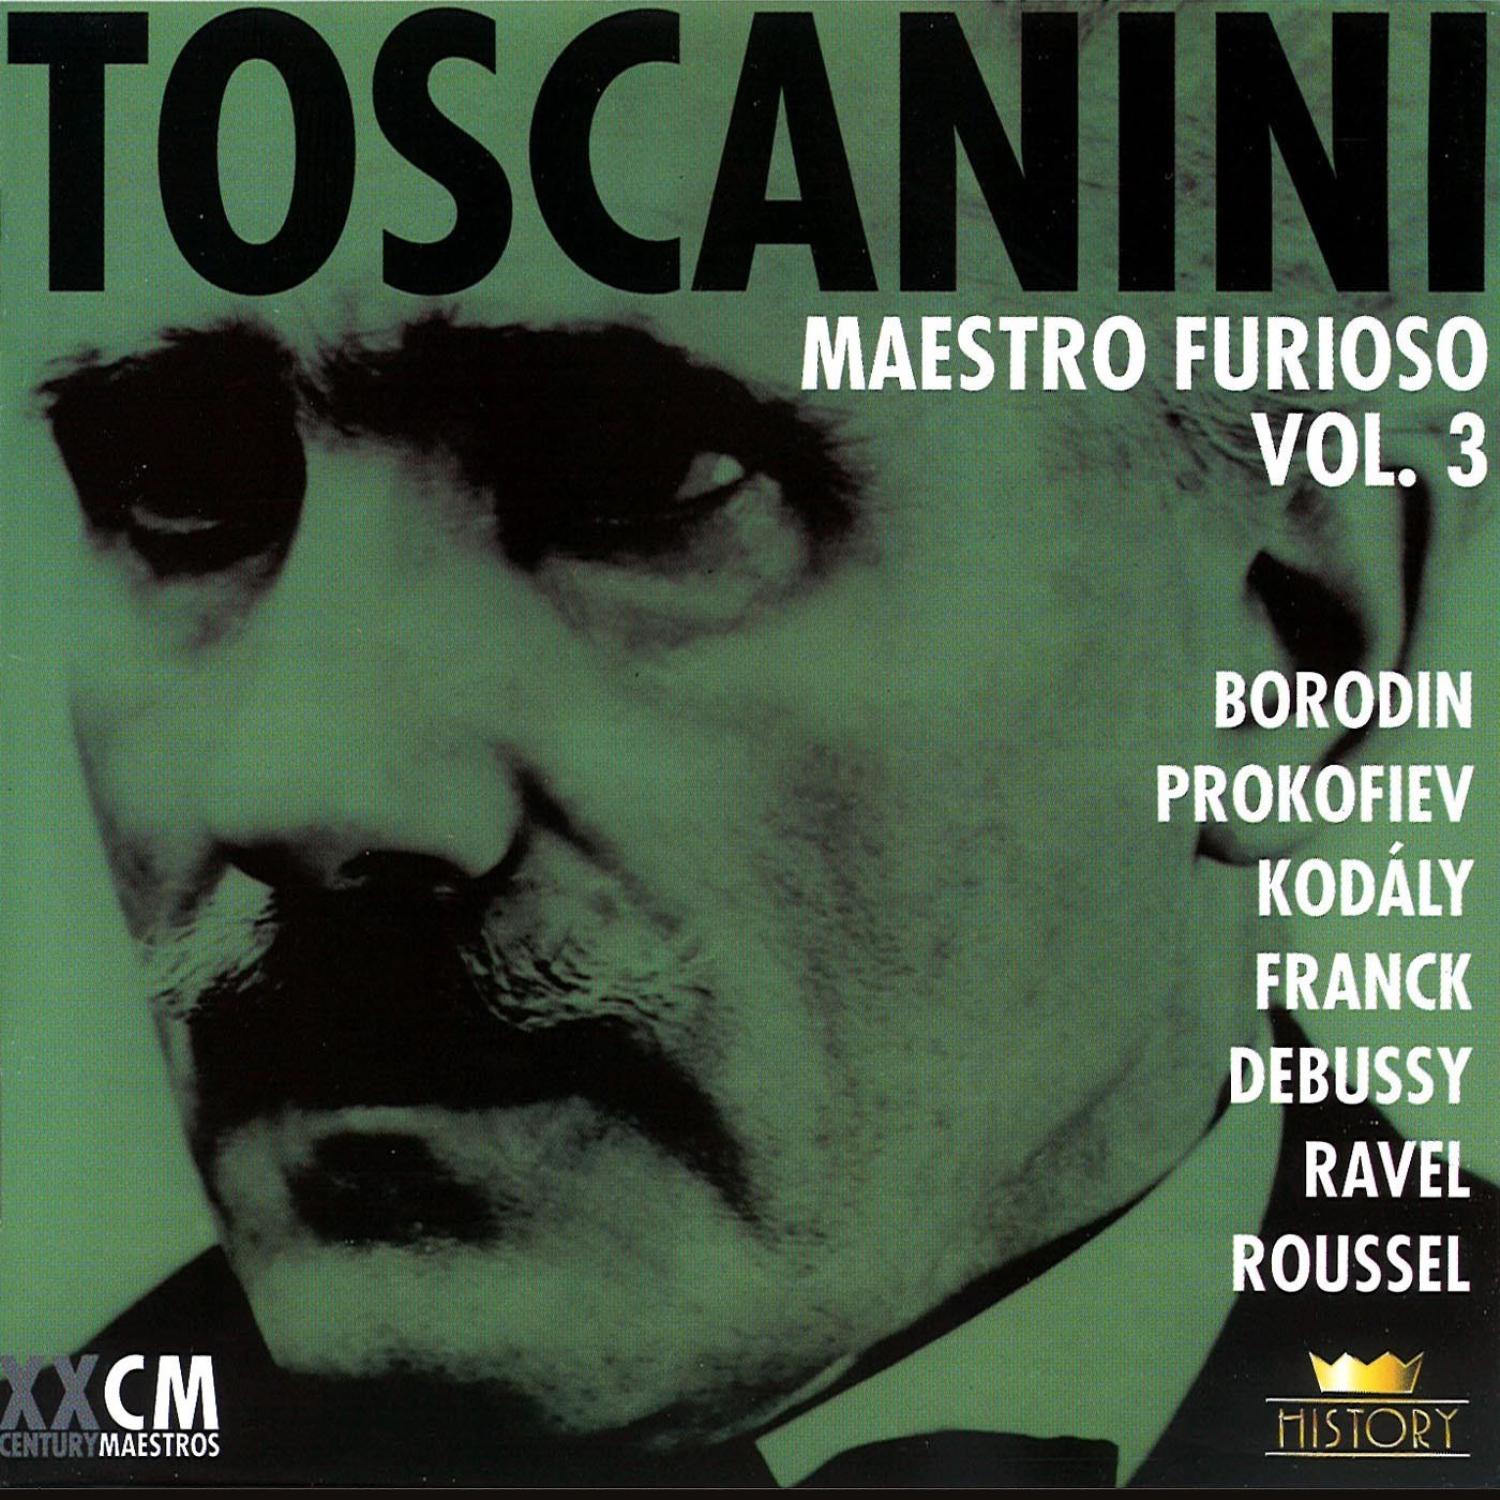 Arturo Toscanini Vol. 4